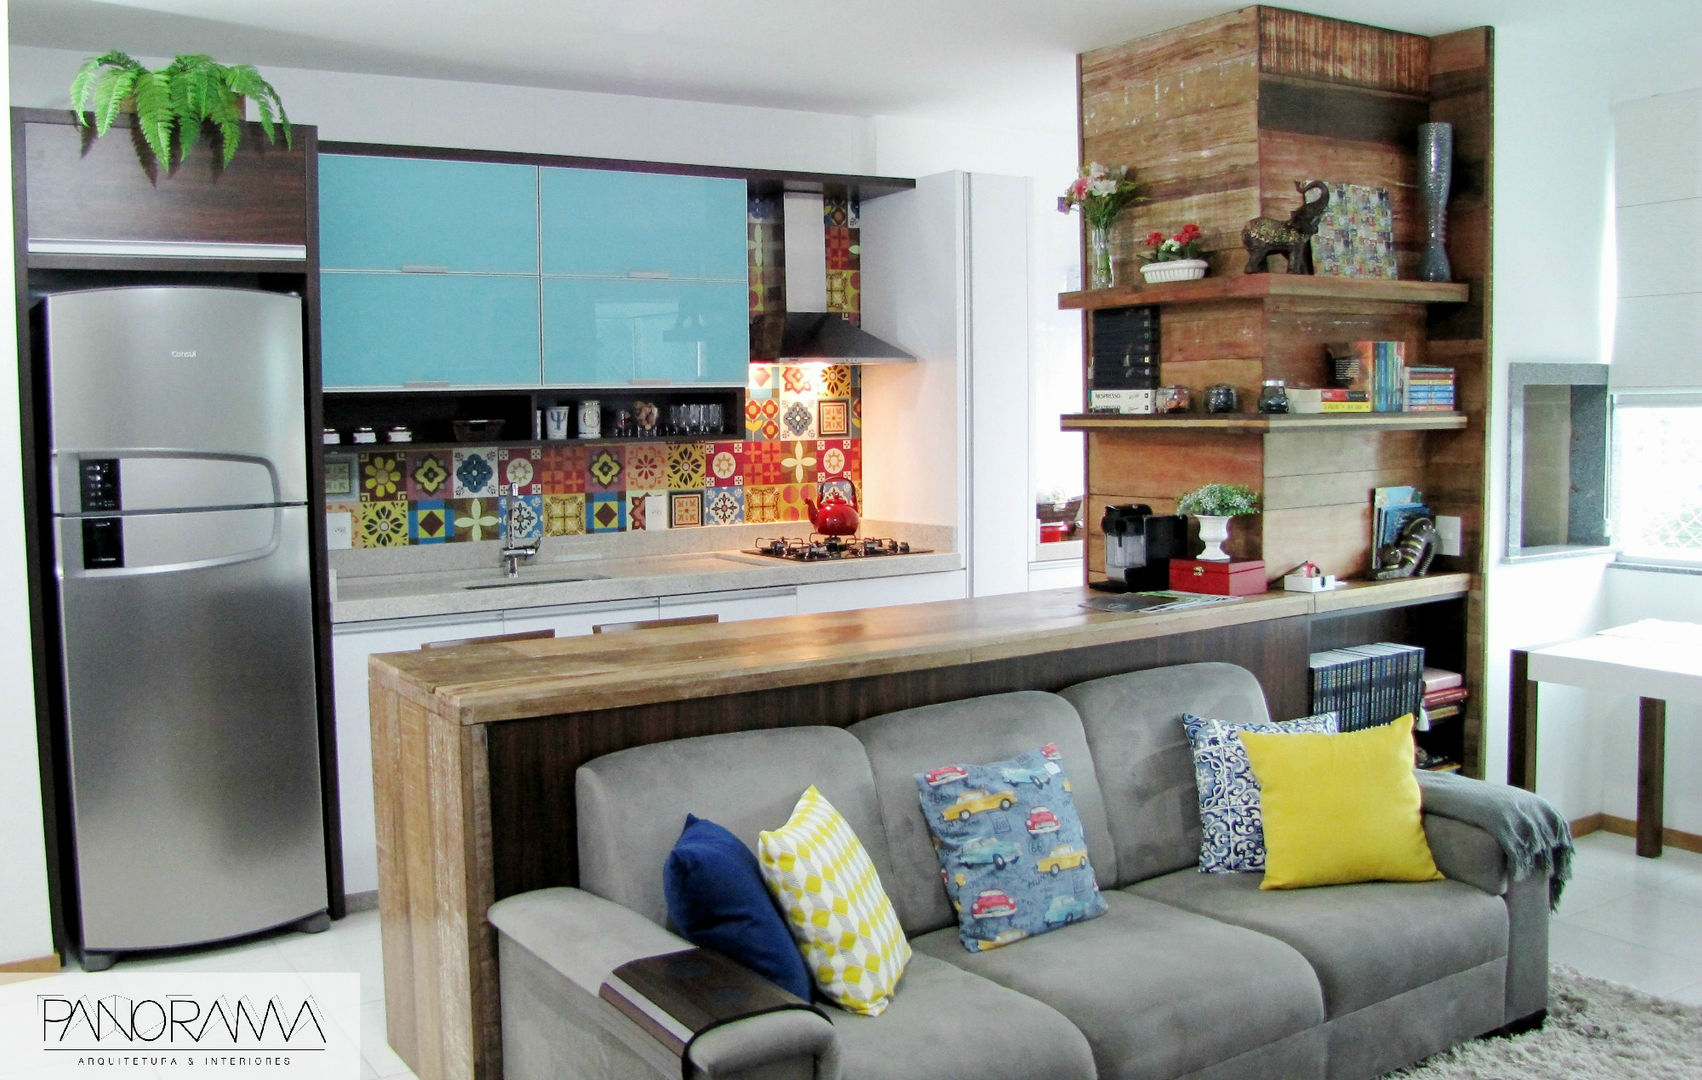 Living integrado - sala de estar e cozinha Panorama Arquitetura & Interiores Cozinhas ecléticas Cozinha,Cores,Colorido,Integrado,Cozinha pequena,Living,Madeira demolição